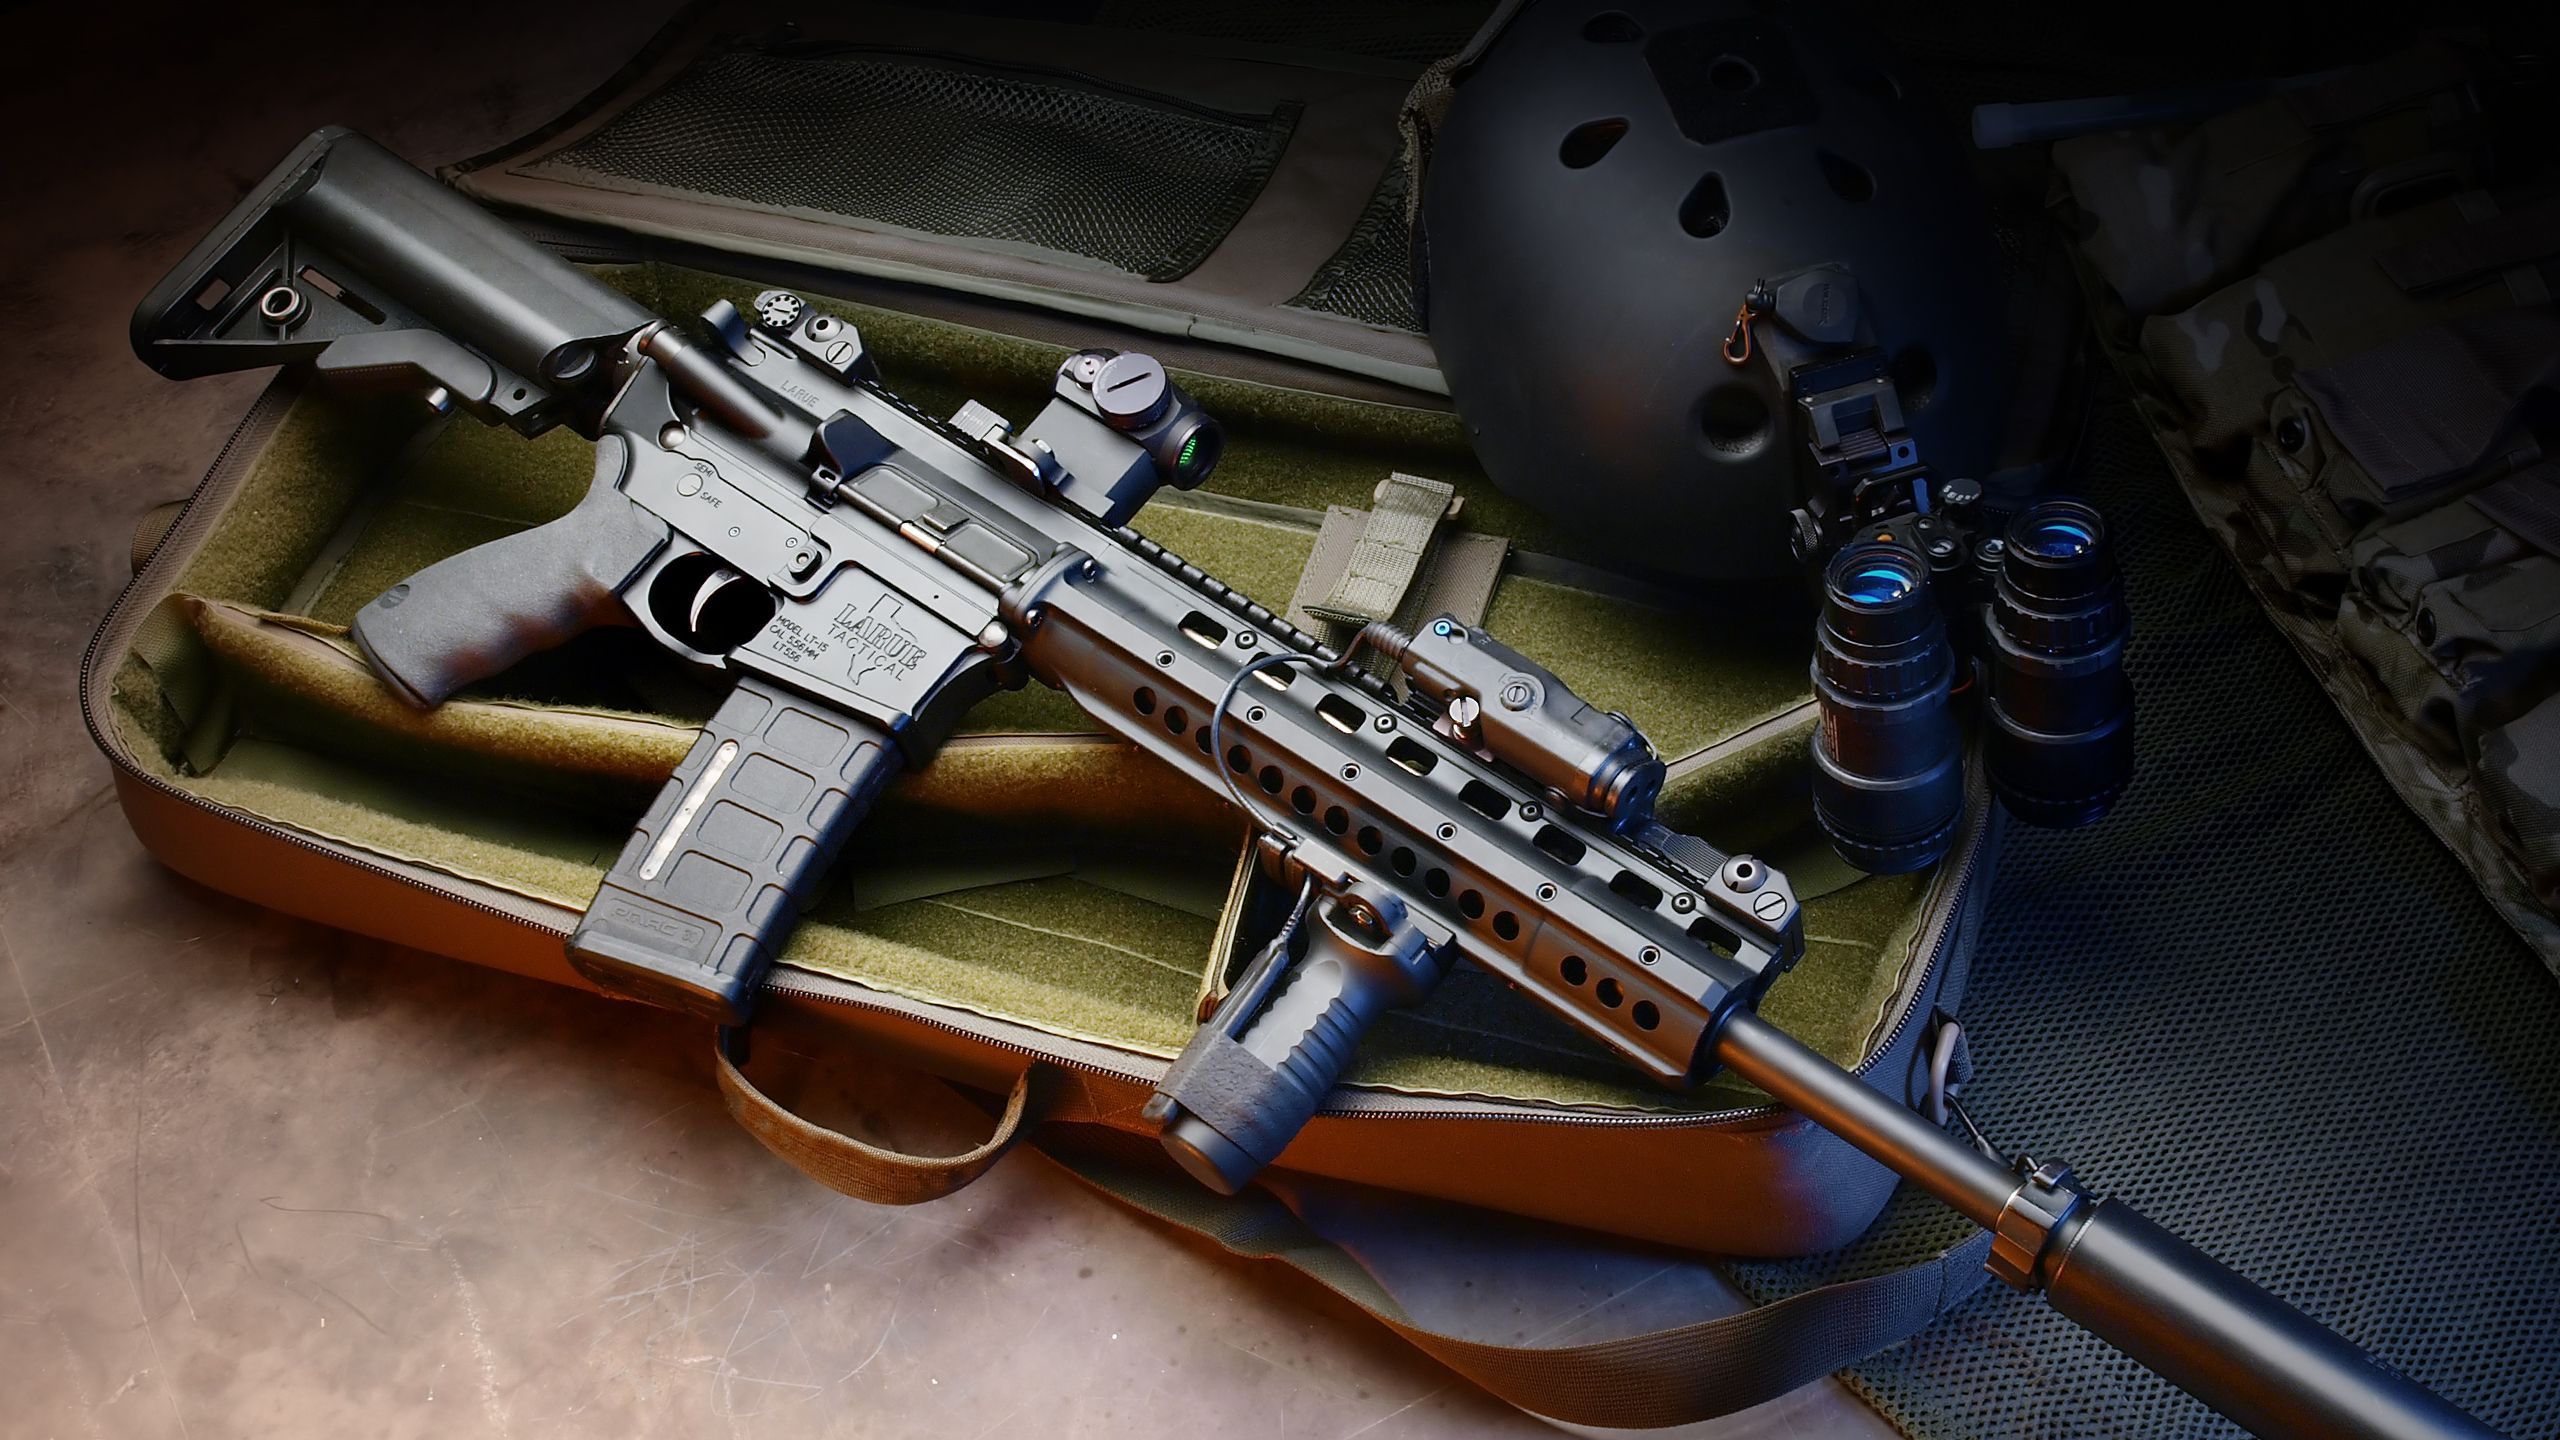 M4卡宾枪, 卡宾枪, 枪, 枪支, 触发器 壁纸 2560x1440 允许